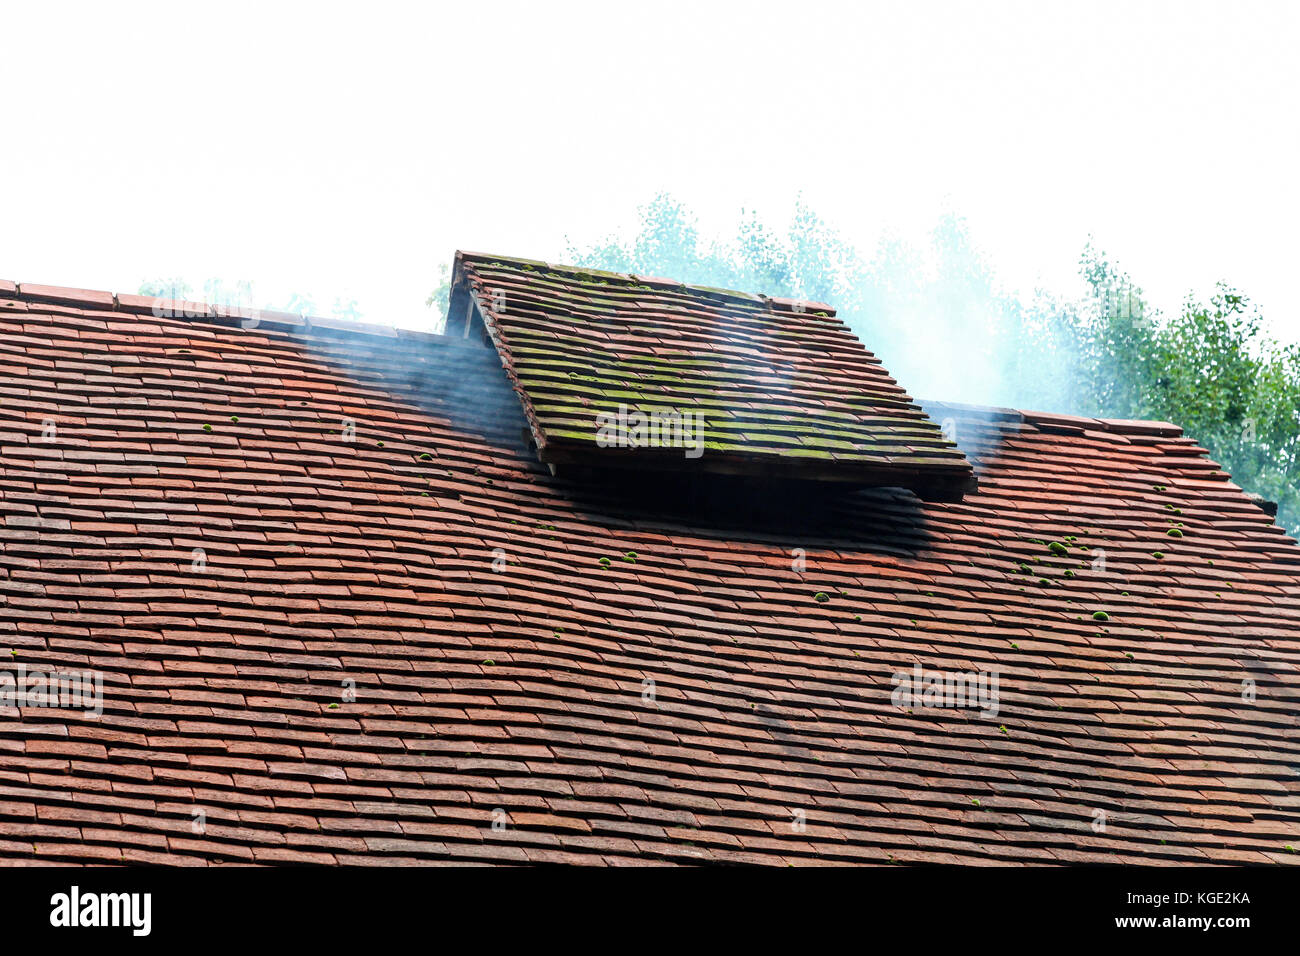 Une ancienne cheminée sur un toit d'une maison à colombage au Musée d'Avoncroft des bâtiments, Bromsgrove, Worcestershire, Angleterre, RU Banque D'Images